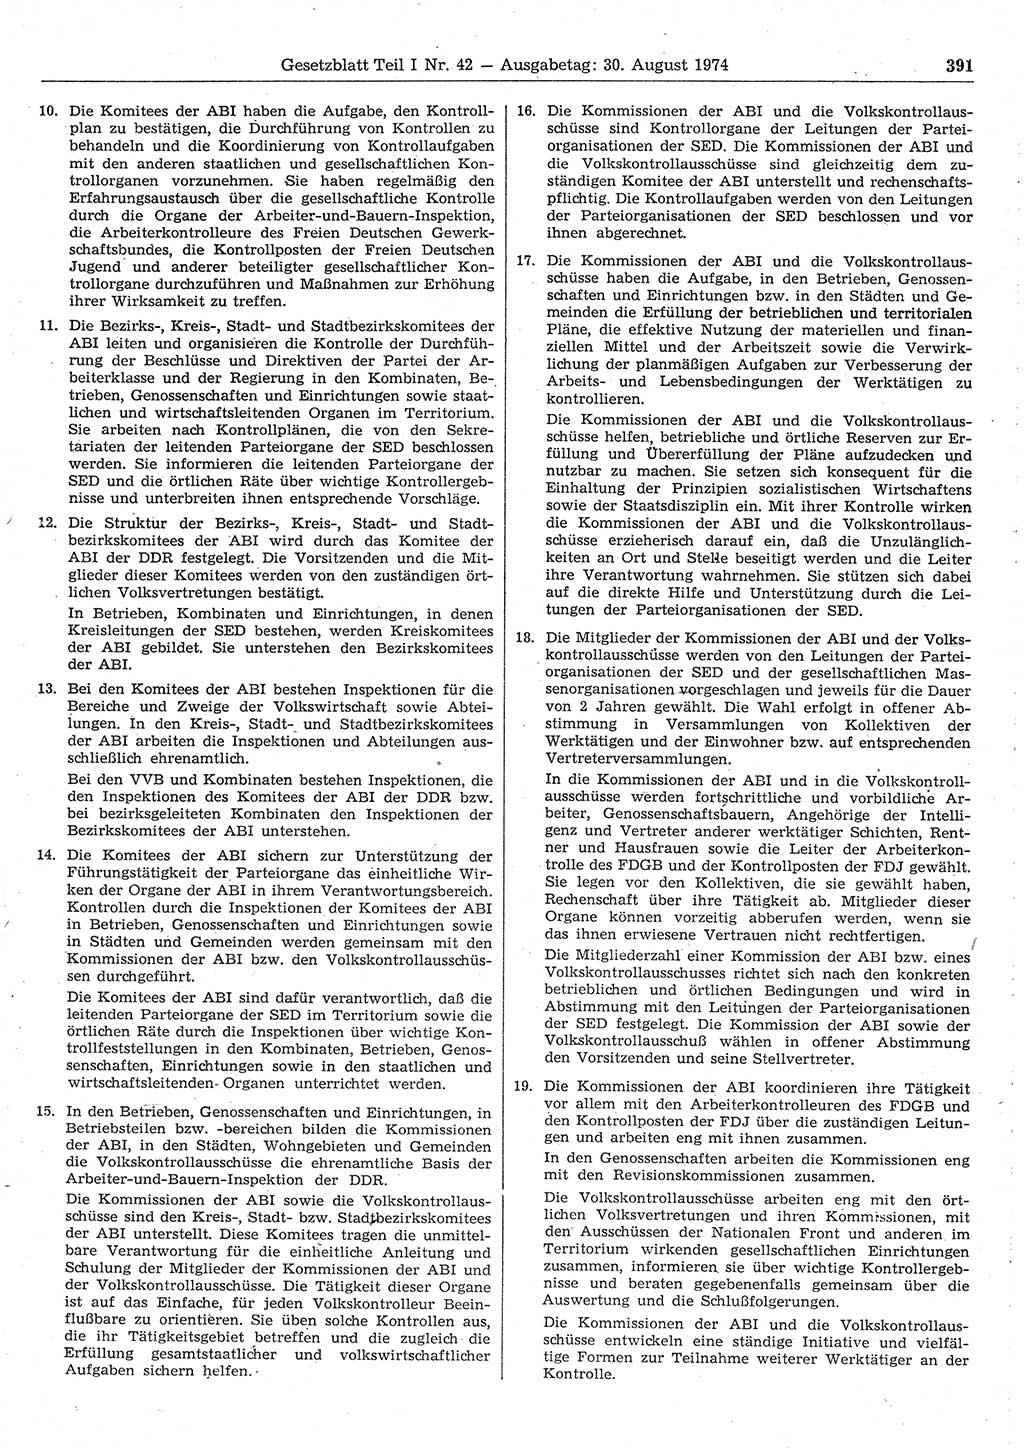 Gesetzblatt (GBl.) der Deutschen Demokratischen Republik (DDR) Teil Ⅰ 1974, Seite 391 (GBl. DDR Ⅰ 1974, S. 391)